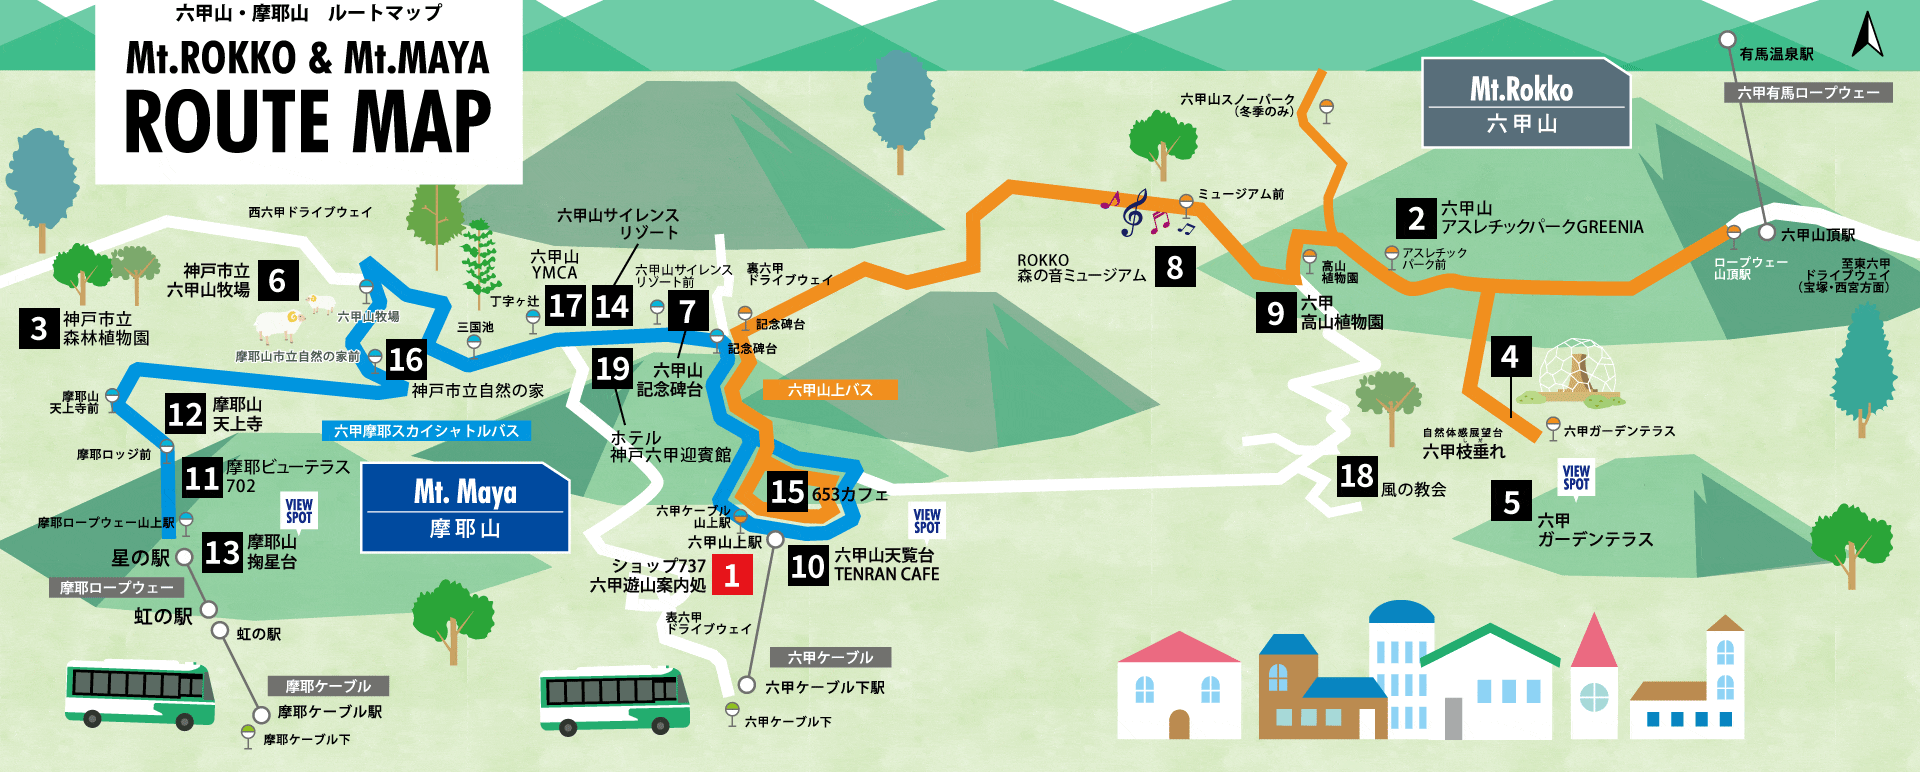 摩耶山・六甲山の山上施設やルートを記載したマップです。